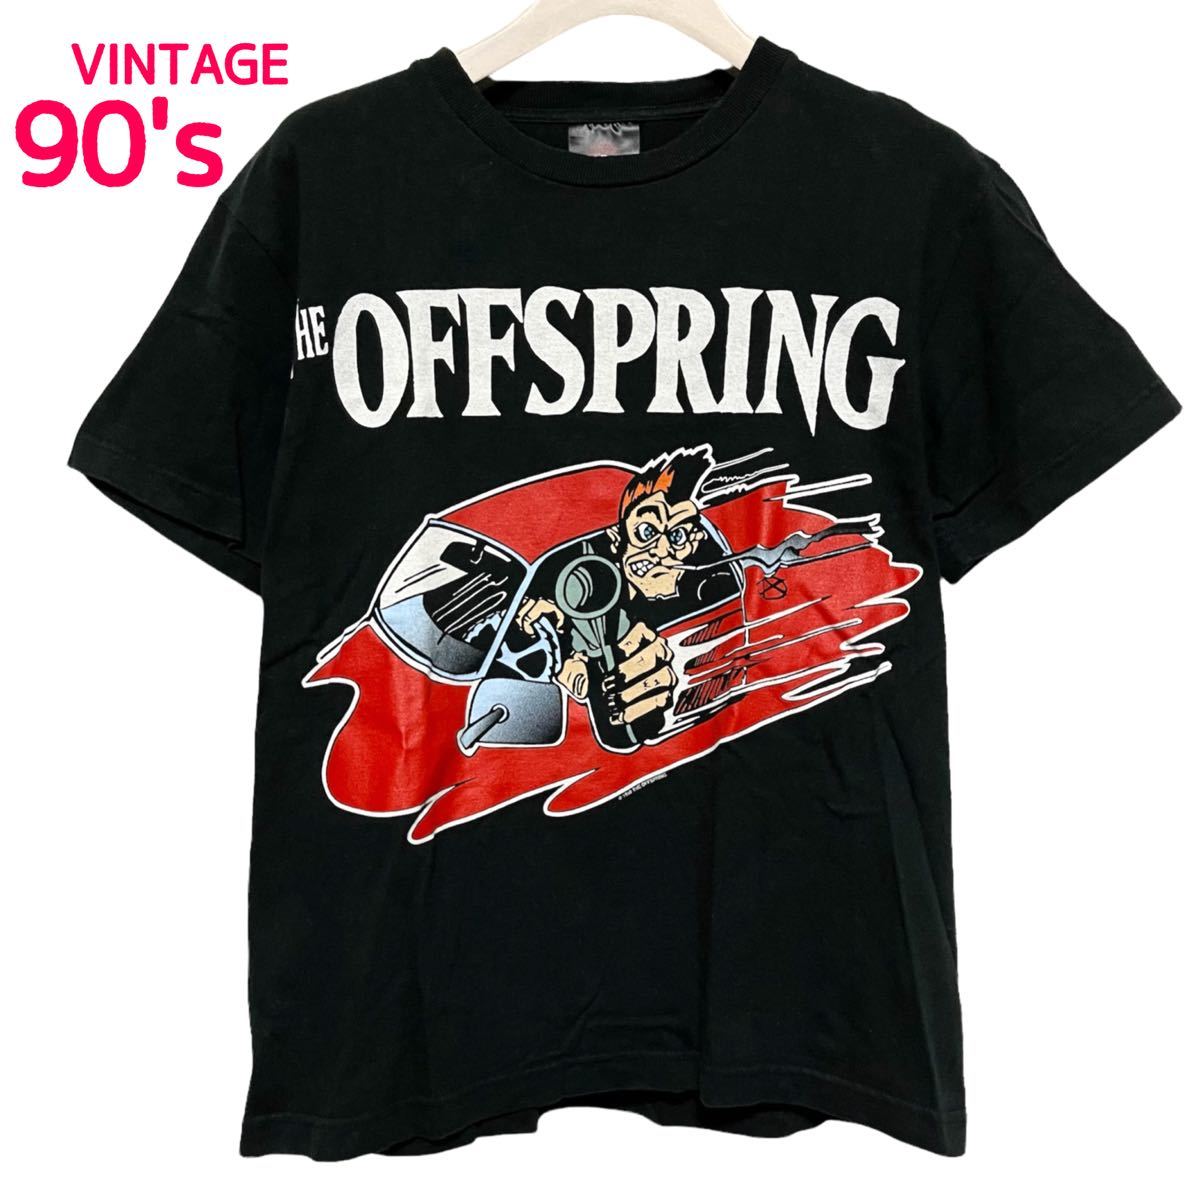 【90s】THE OFFSPRING 1998 ヴィンテージ バンドTシャツ オフスプリング コピーライト ビンテージ古着 希少 Sサイズ レア  90年代 当時物